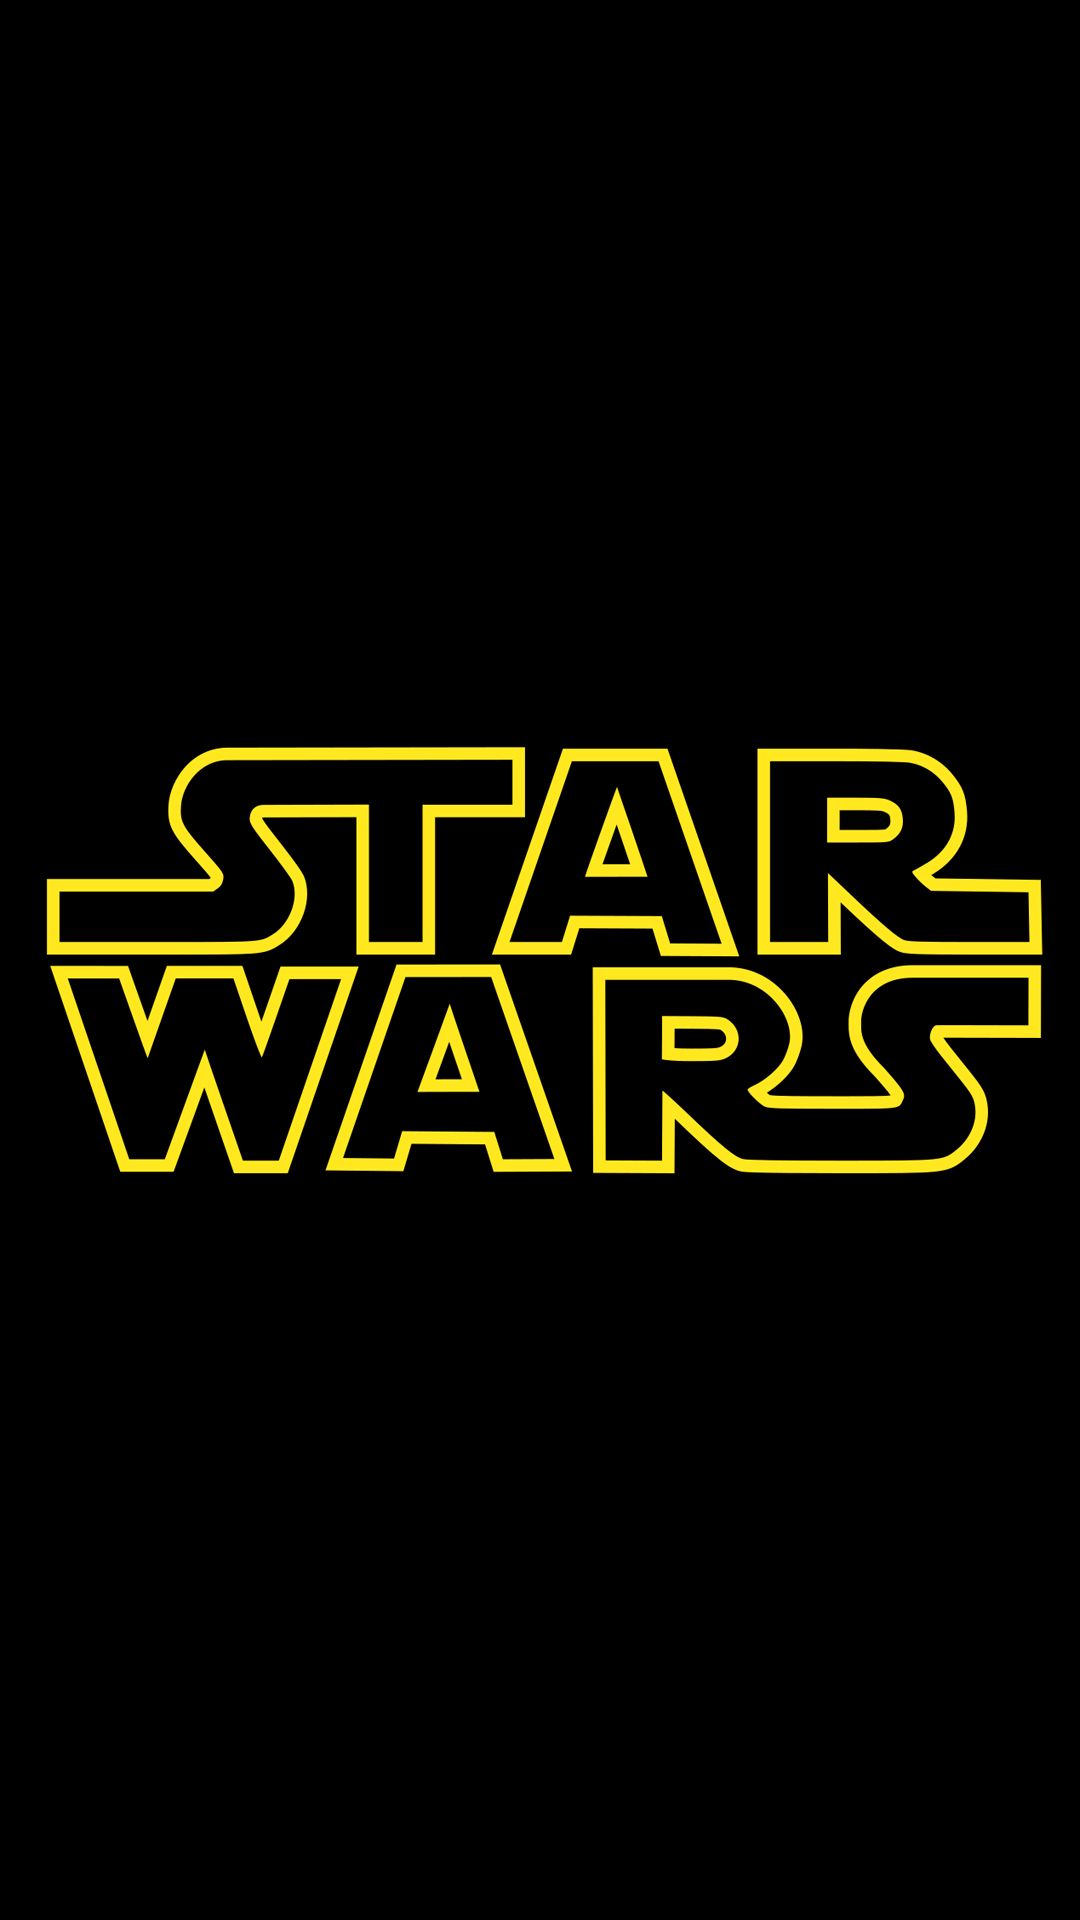 En esta imagen se centra una imagen vertical del banner de la franquicia del logotipo clásico de Star Wars.